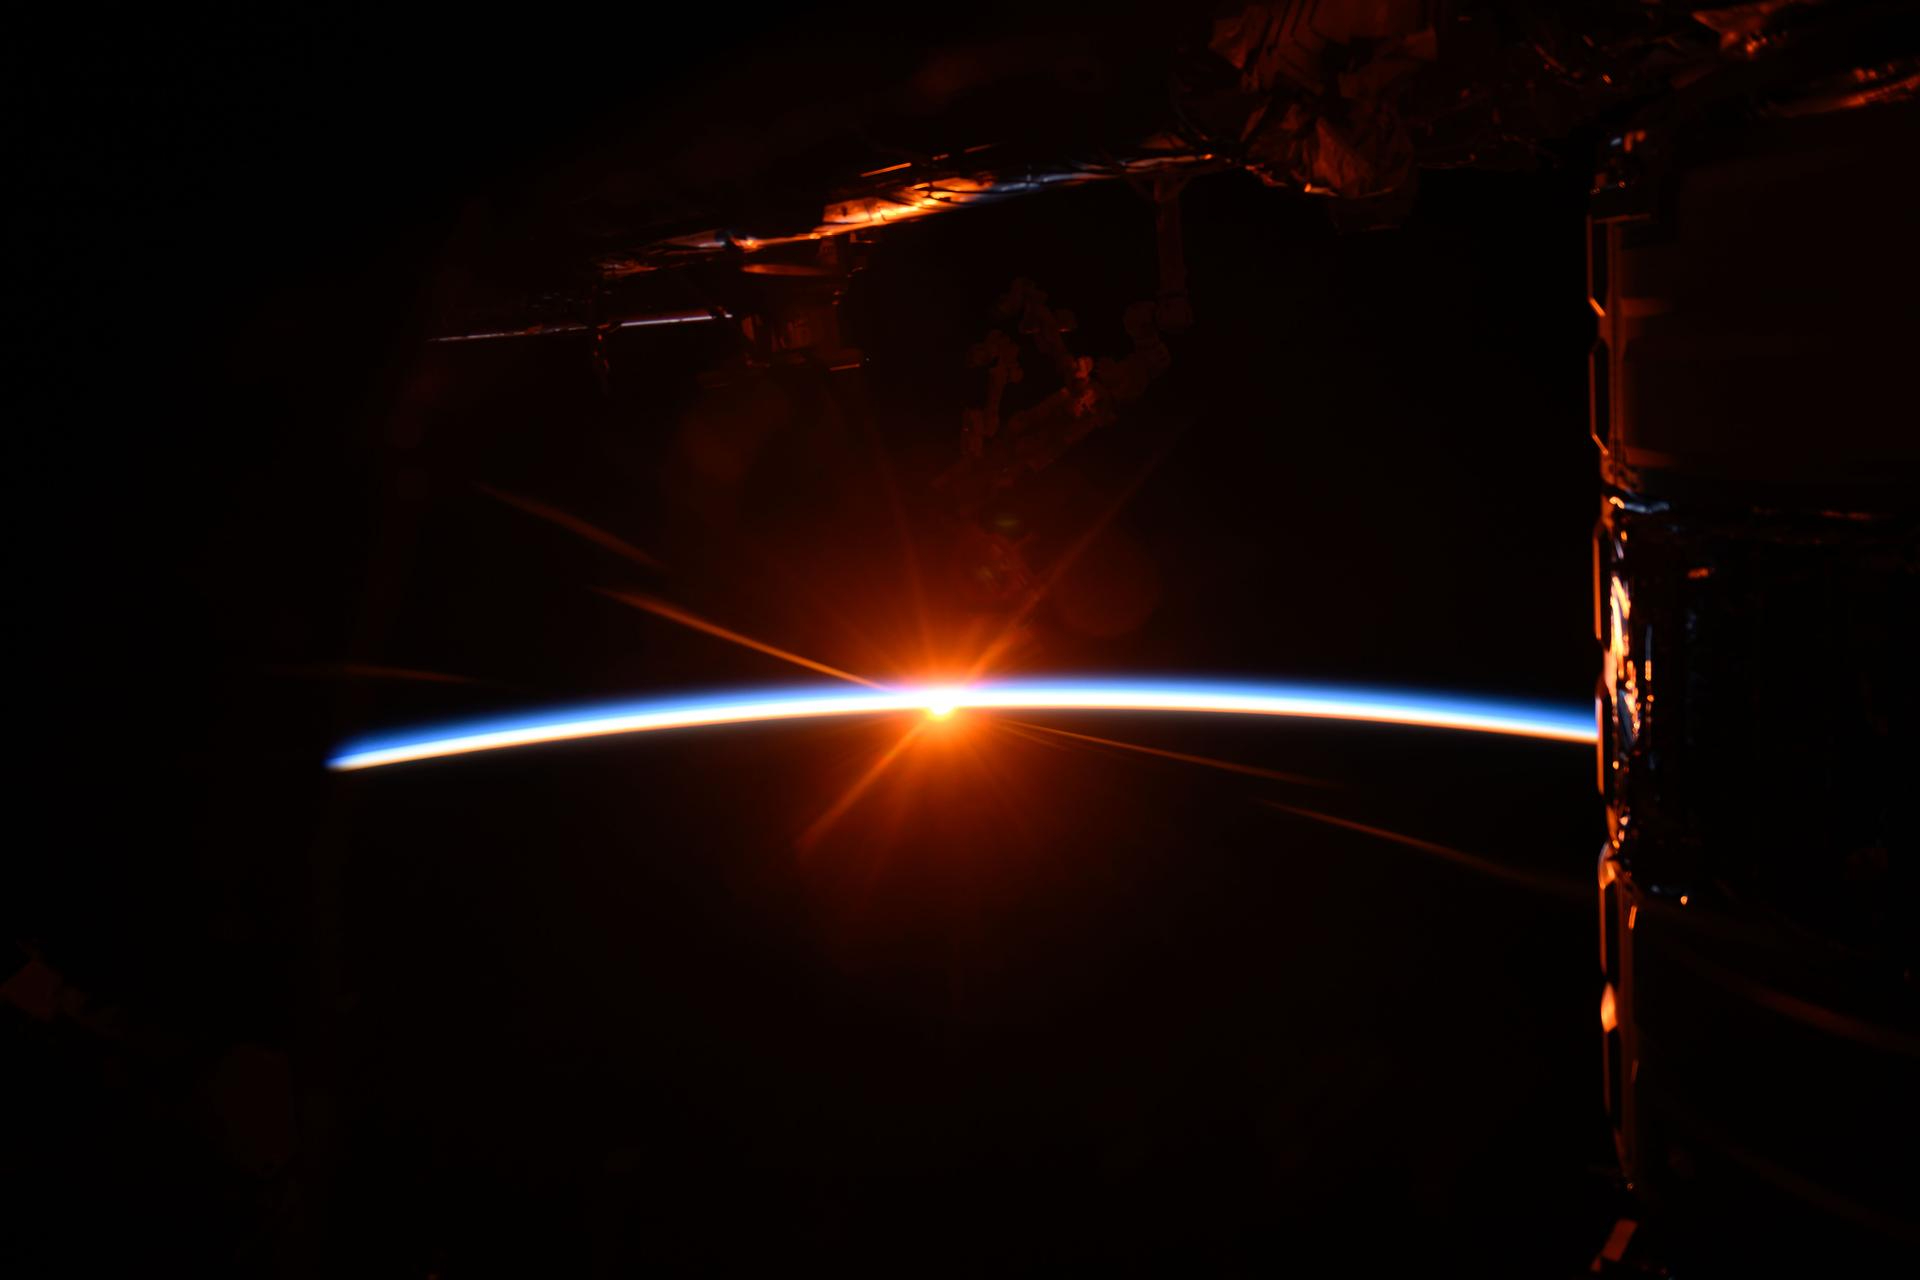 un arco blanco azulado brillante se extiende hacia el centro desde la izquierda, y en su centro brilla un punto de luz amarilla brillante.  Una sección parcialmente iluminada de la nave espacial cuelga arriba, brillando de color naranja pálido.